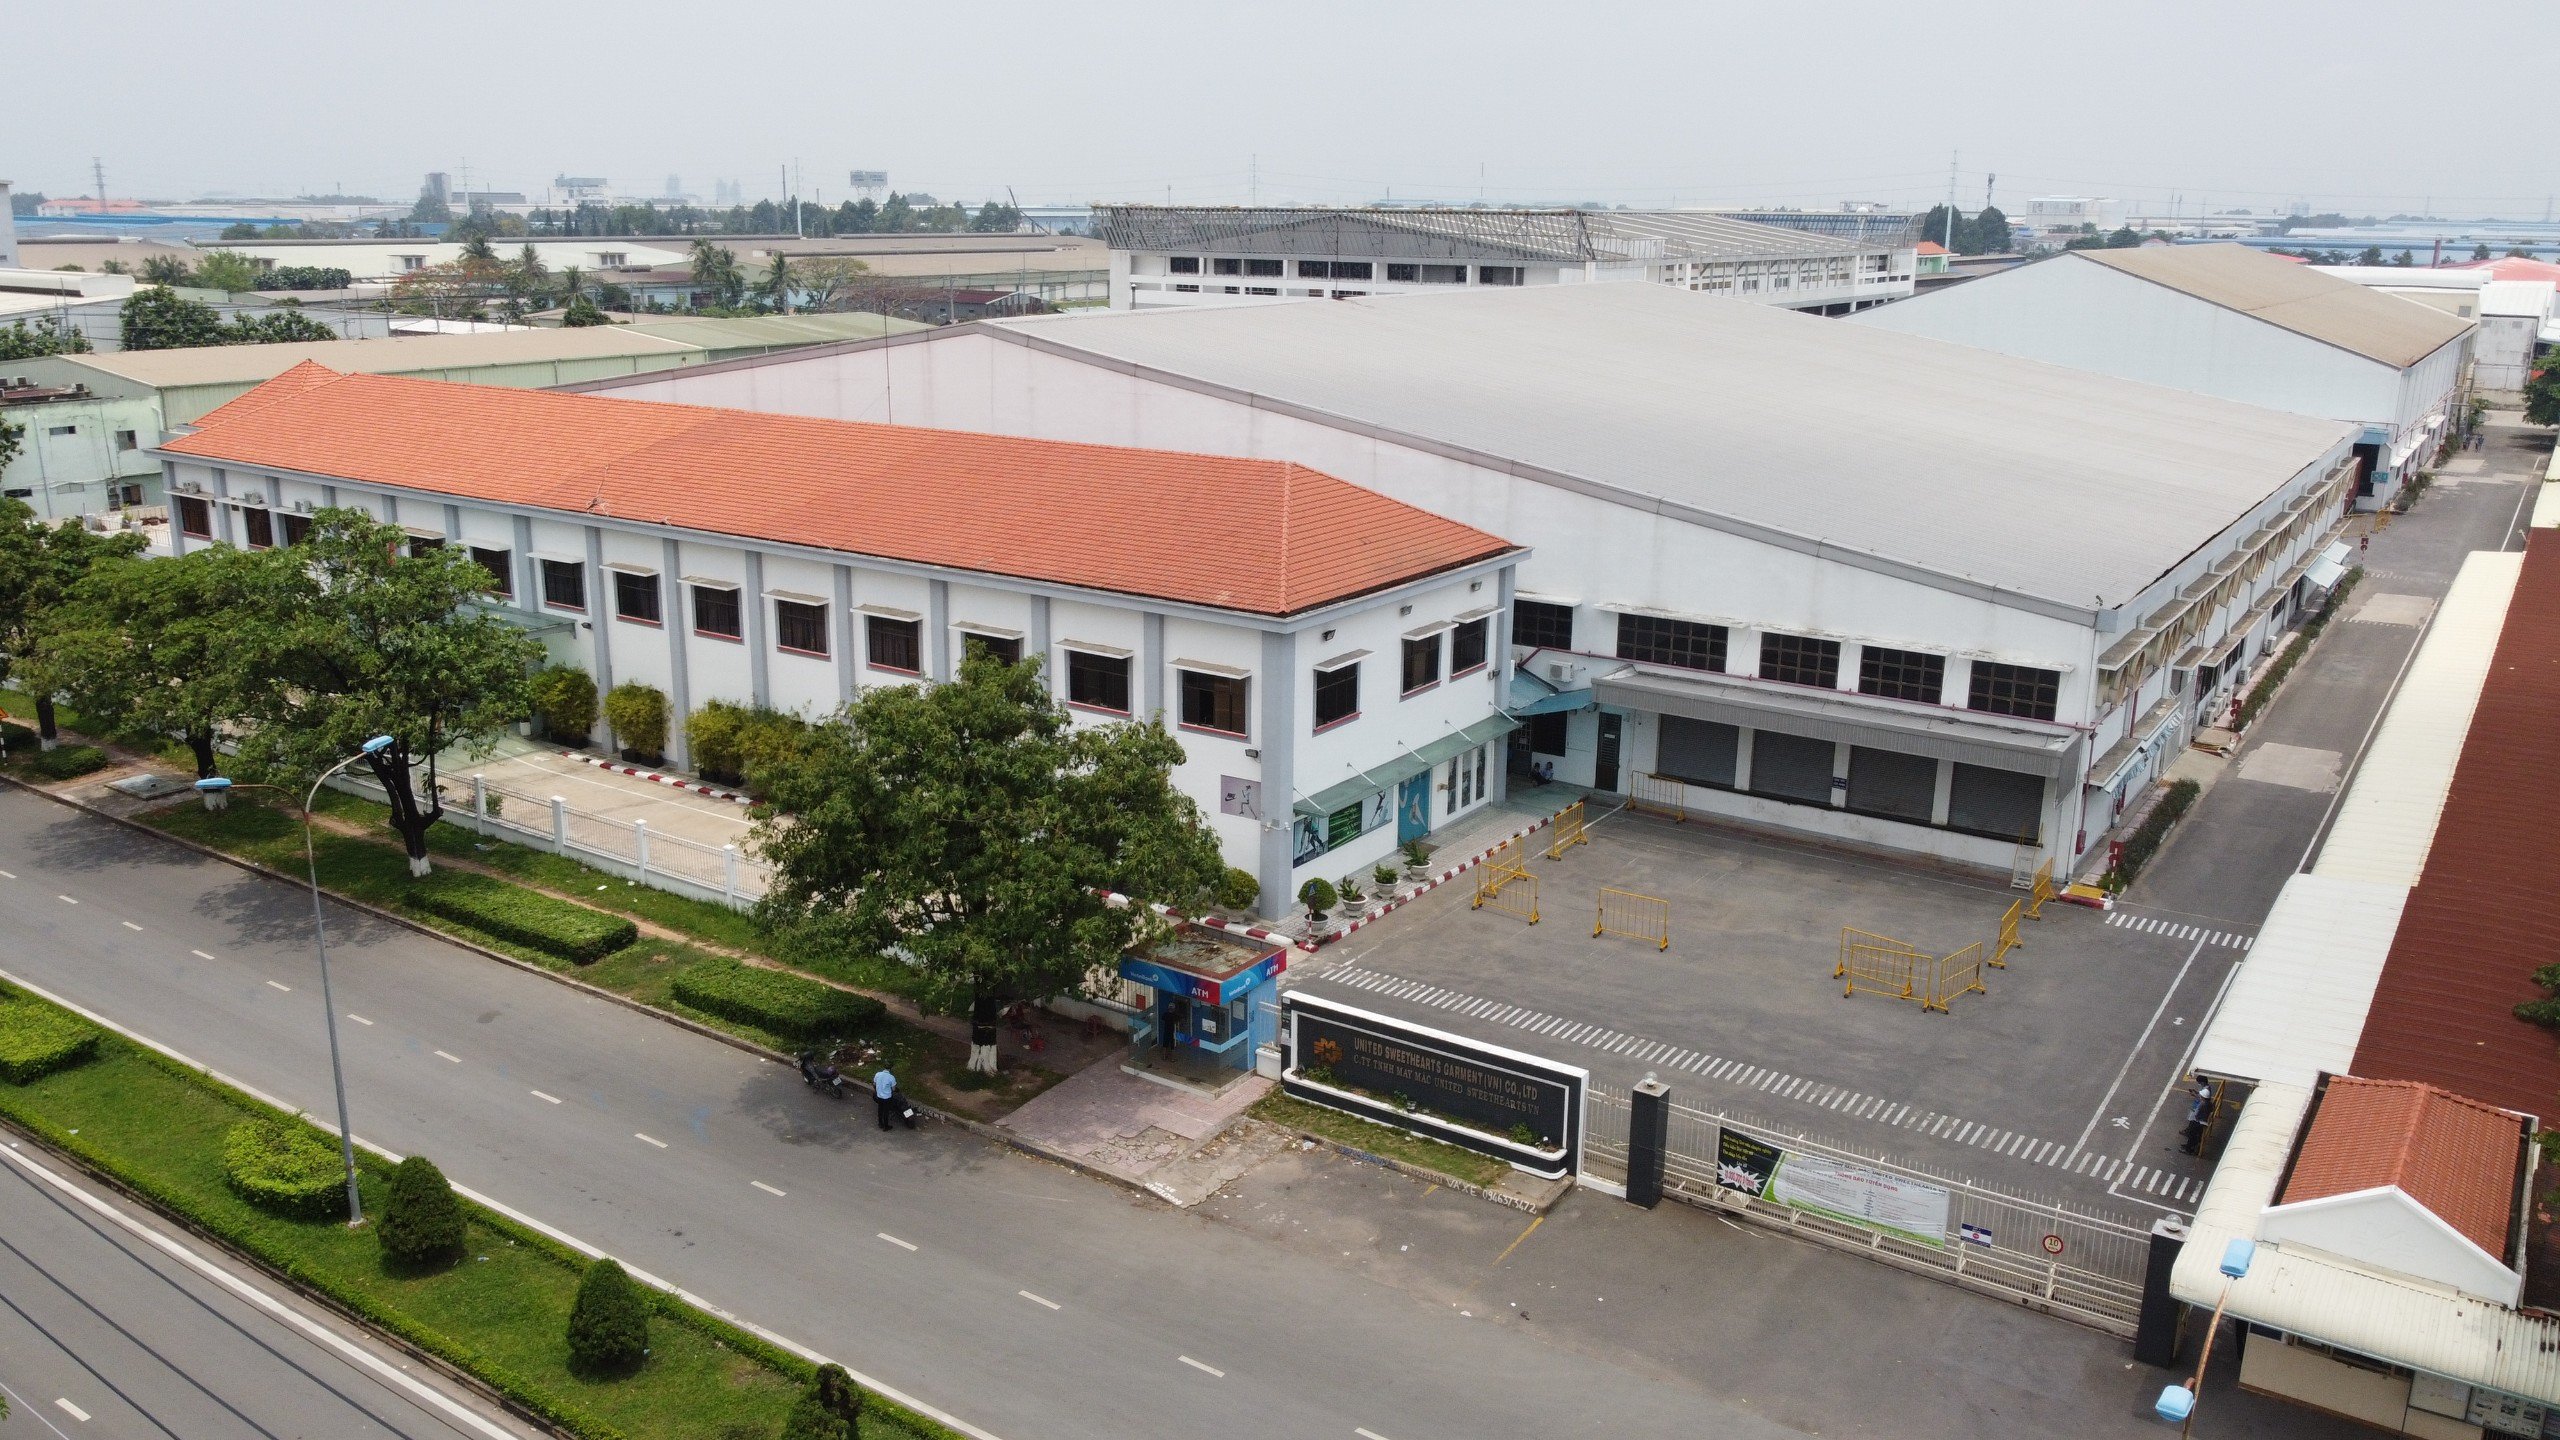 Kiểm định đánh giá nhà xưởng sản xuất – nhà máy may mặc – kiểm định chất lượng nhà xưởng 2021